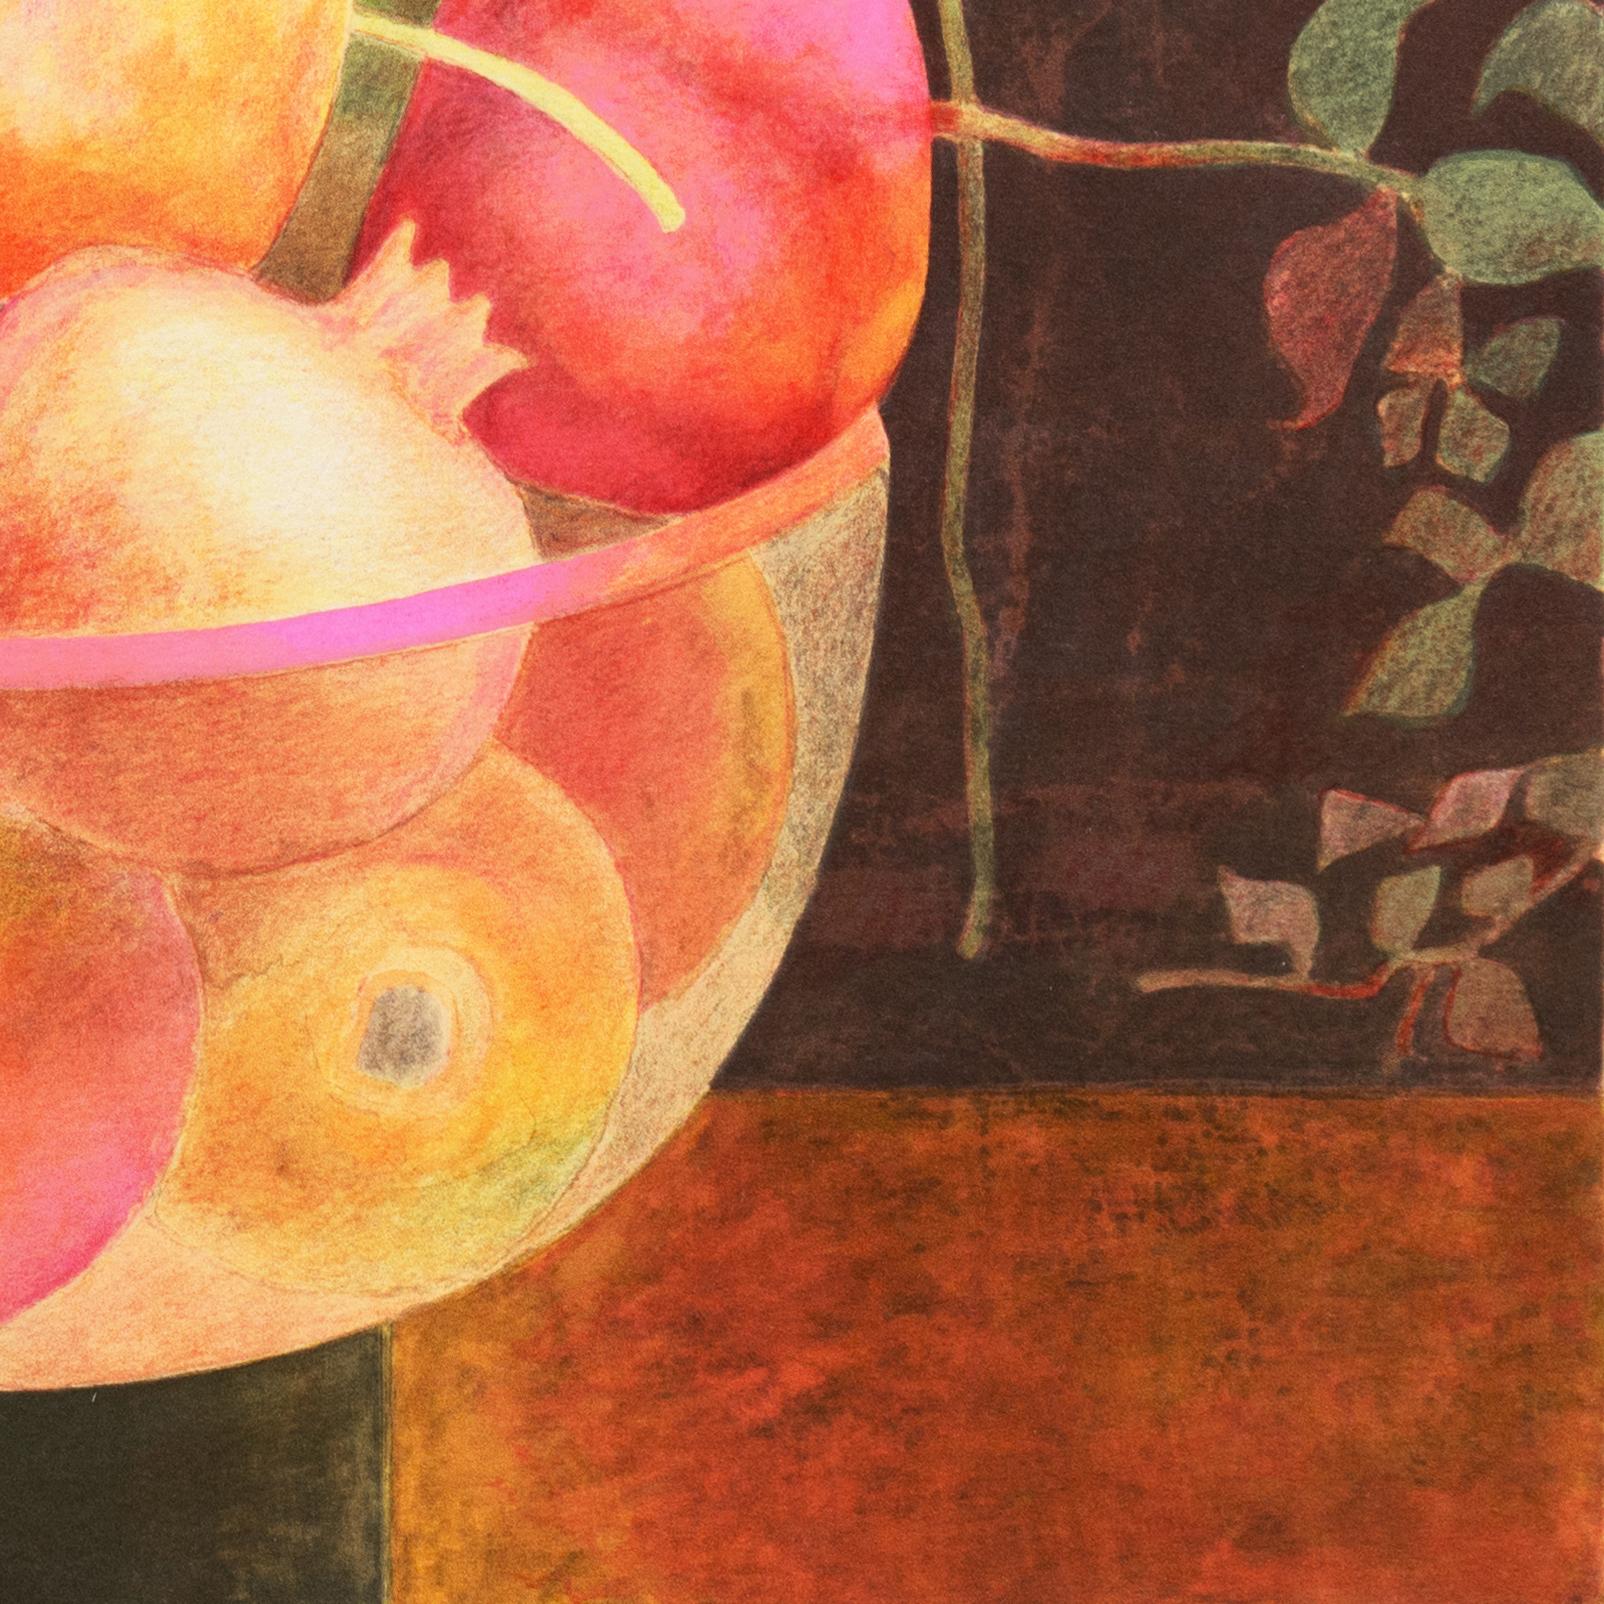 'A Bowl of Pomegranates', Academie Chaumiere, Paris, Ecole des Beaux-Arts, MoMA - Post-Impressionist Print by Pierre Garcia Fons